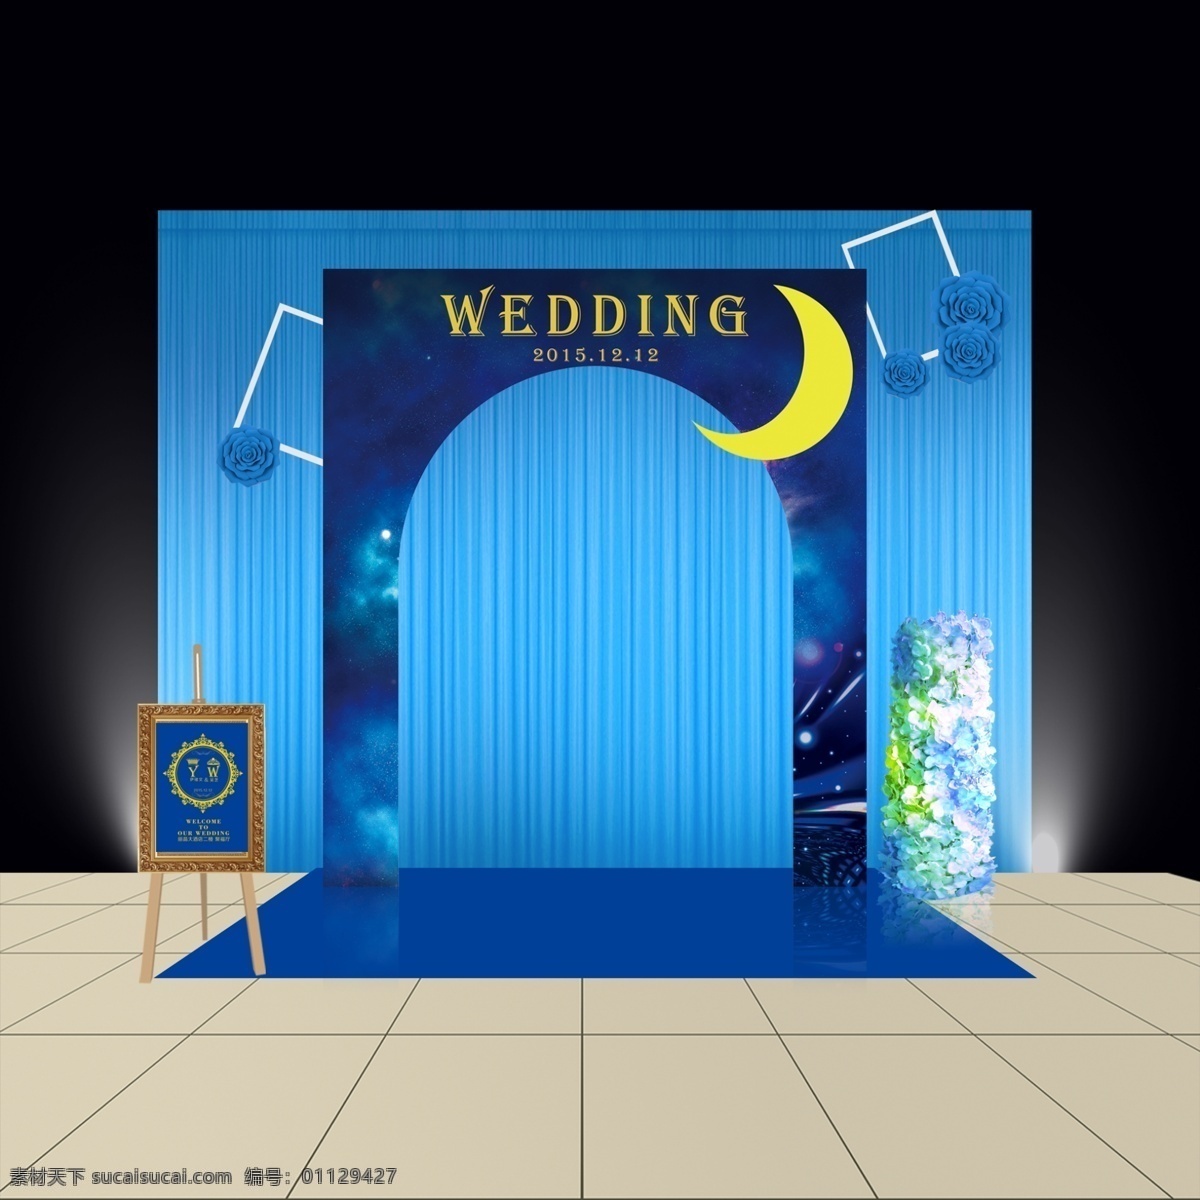 婚礼 舞台 展示 迎宾 区 婚礼舞台 星空 蓝 效果 黑色